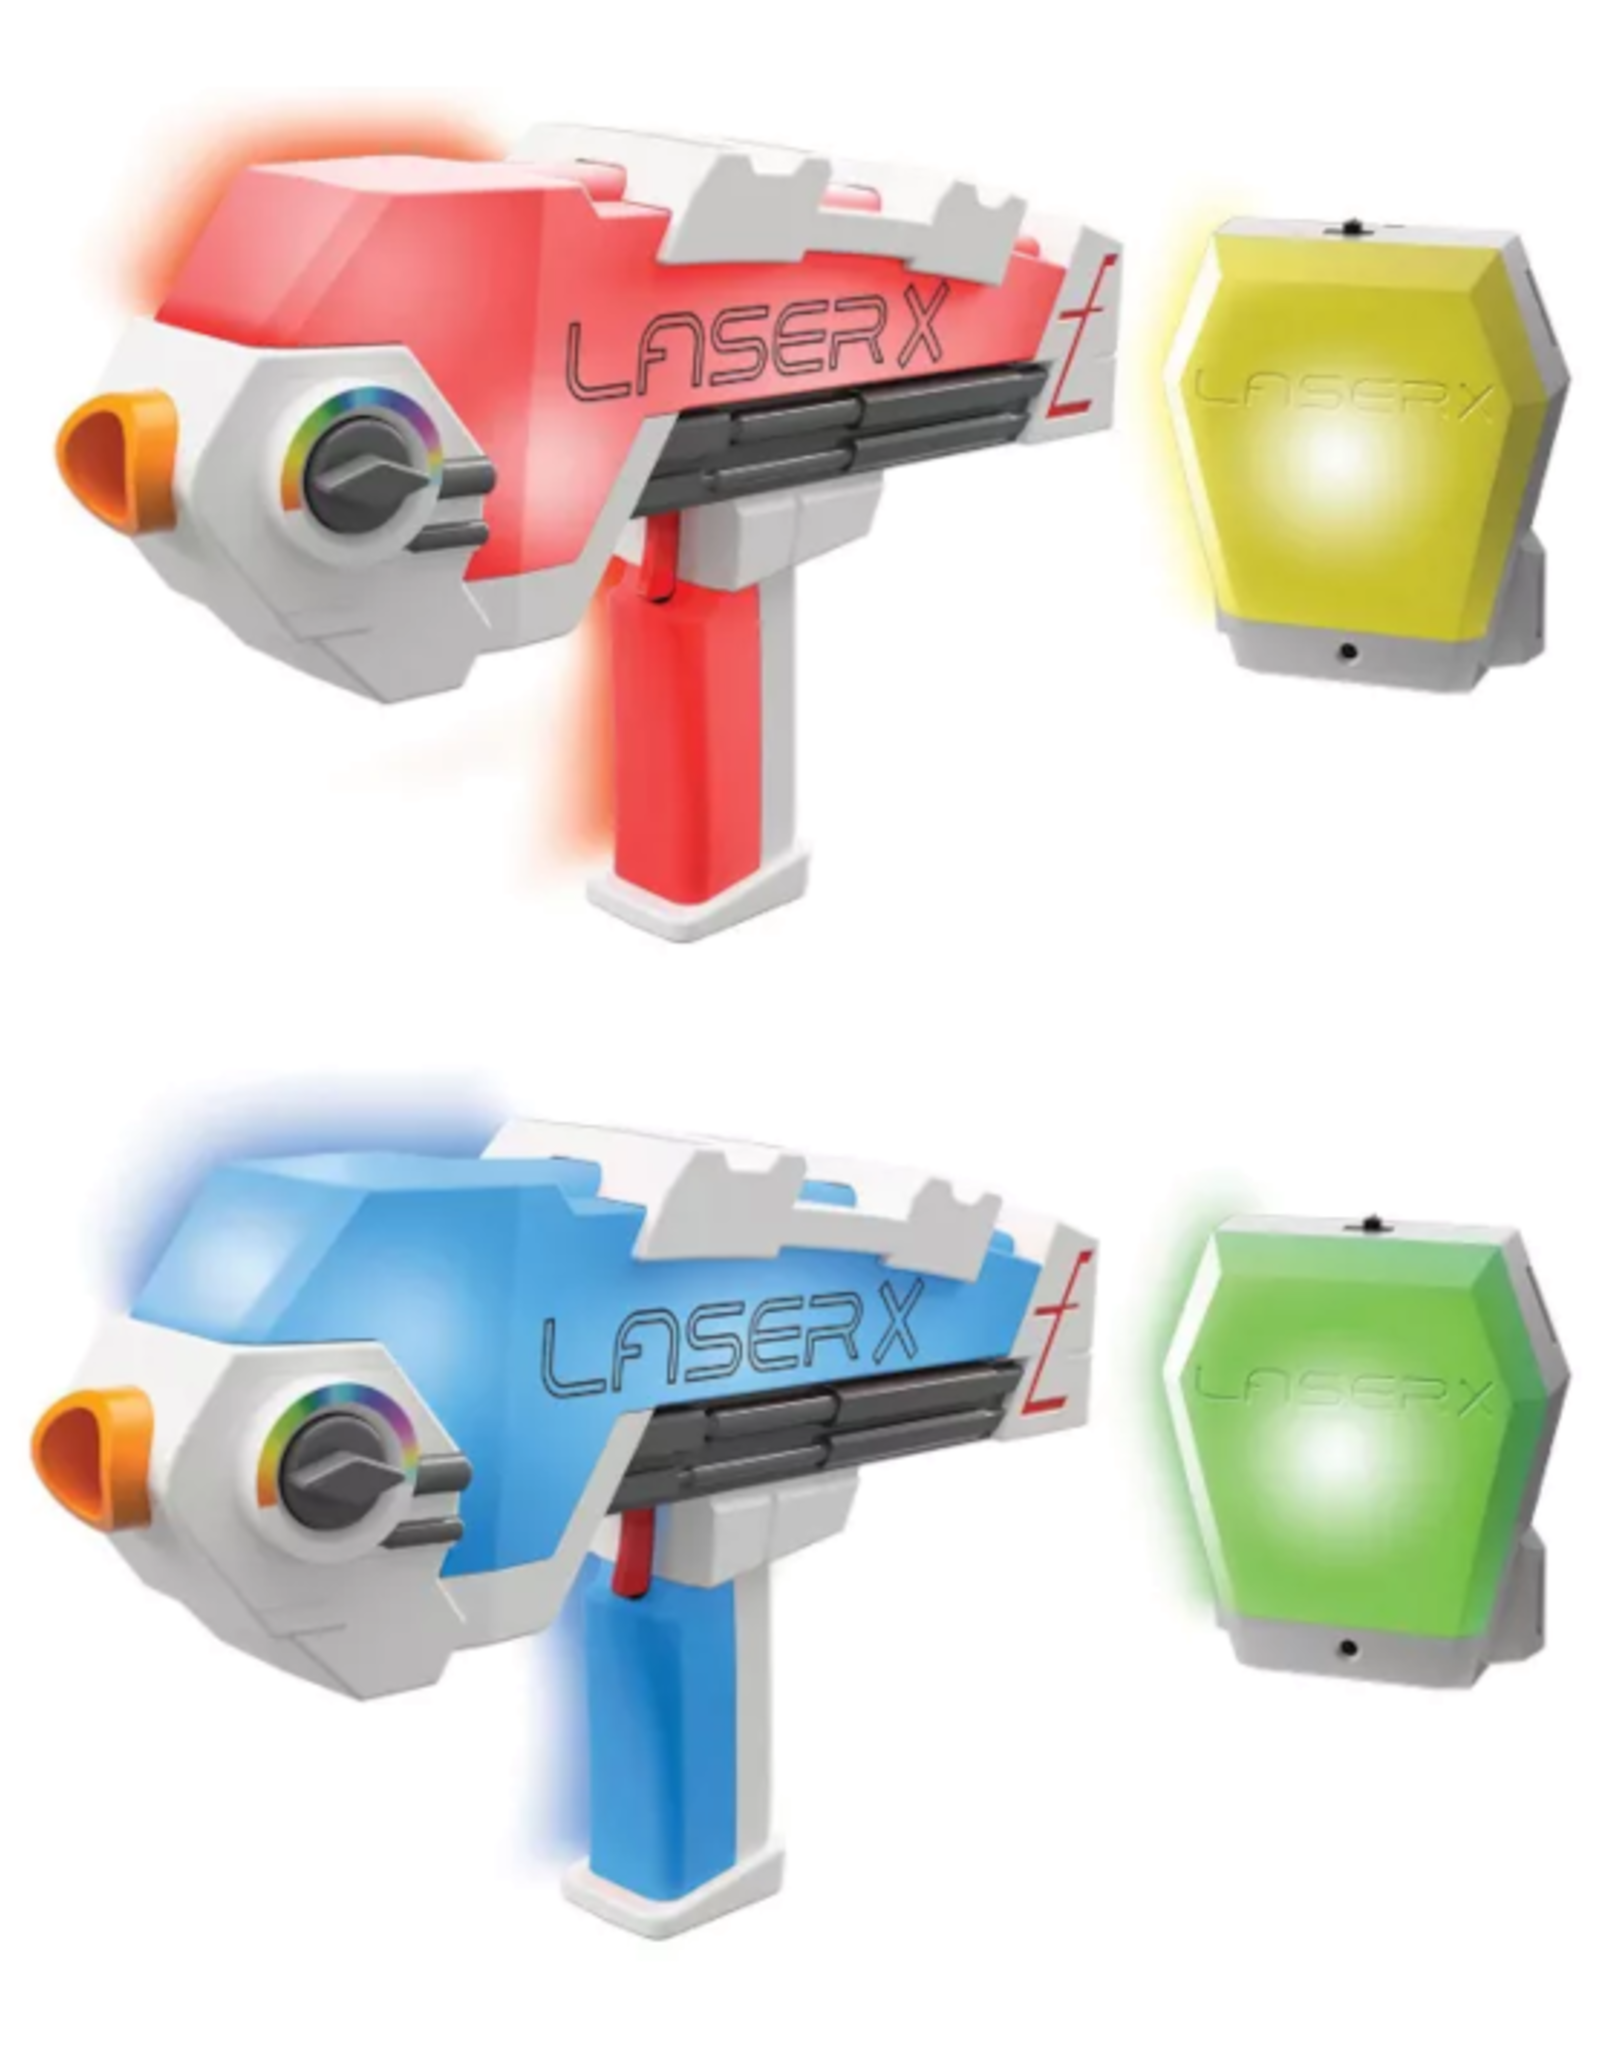 Toysmith Toysmith - Laser X Evolution Sports Blaster